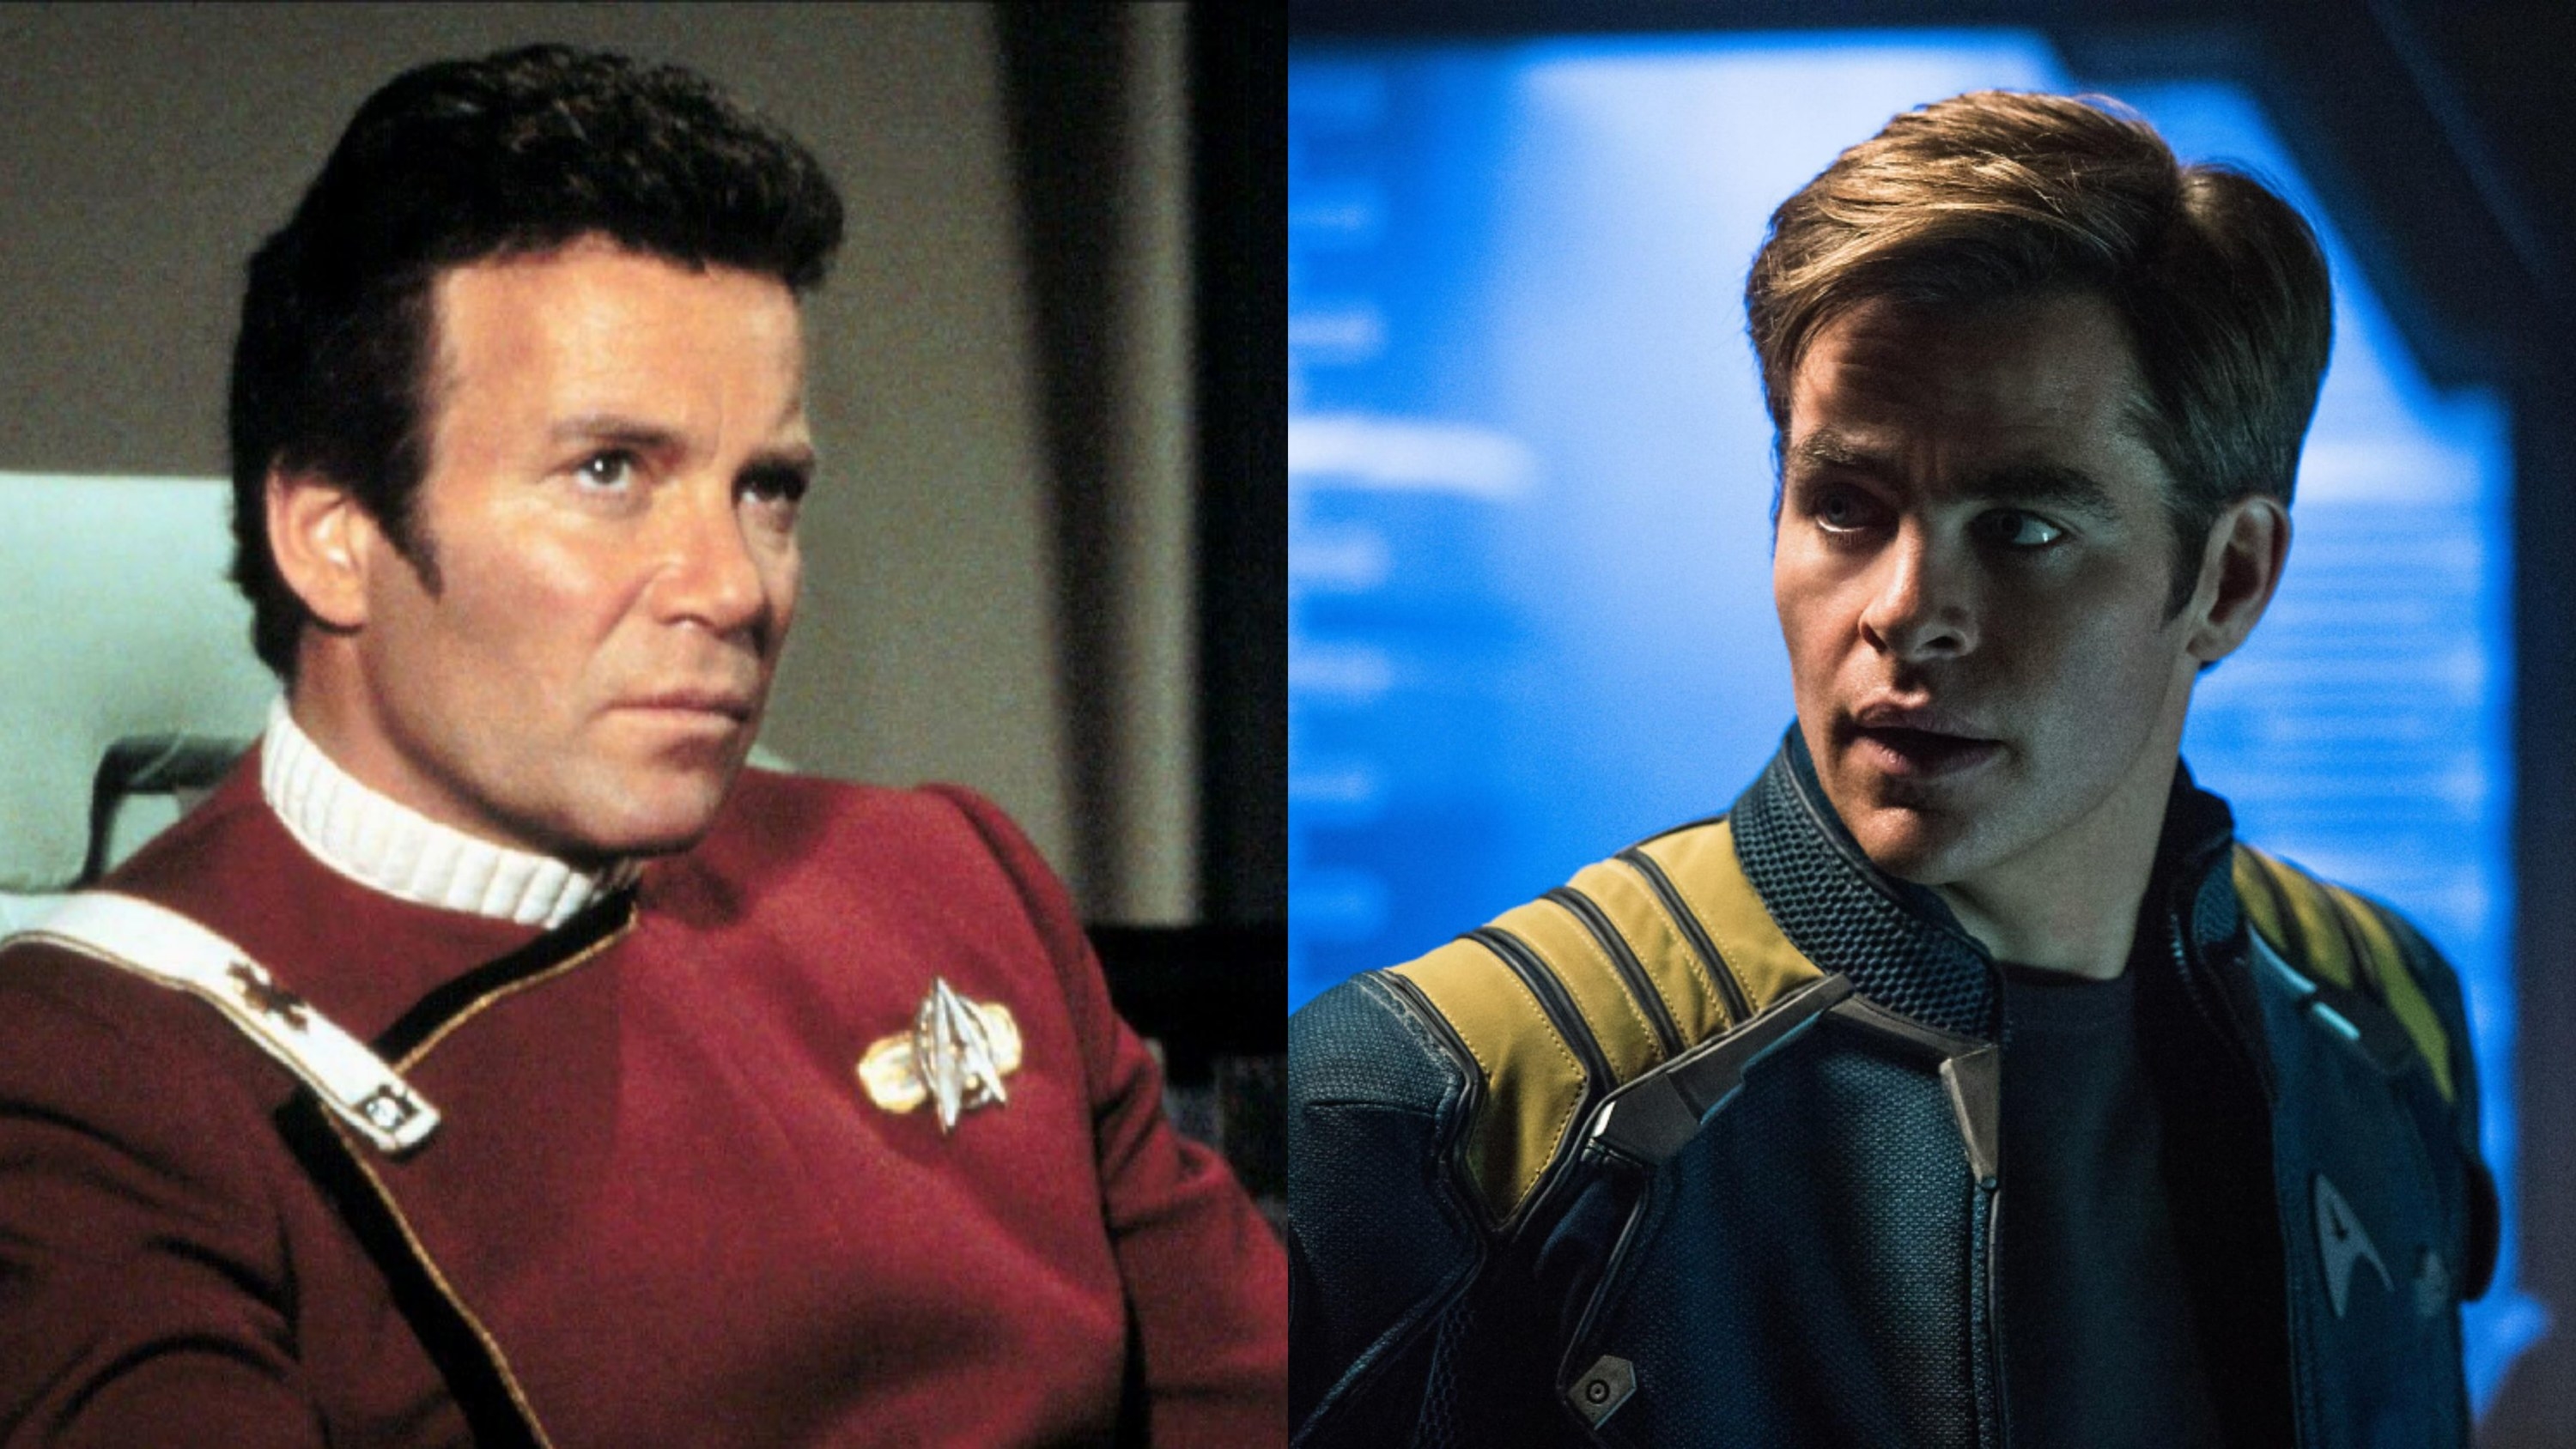 William Shatner vs Chris Pine as Captain Kirk